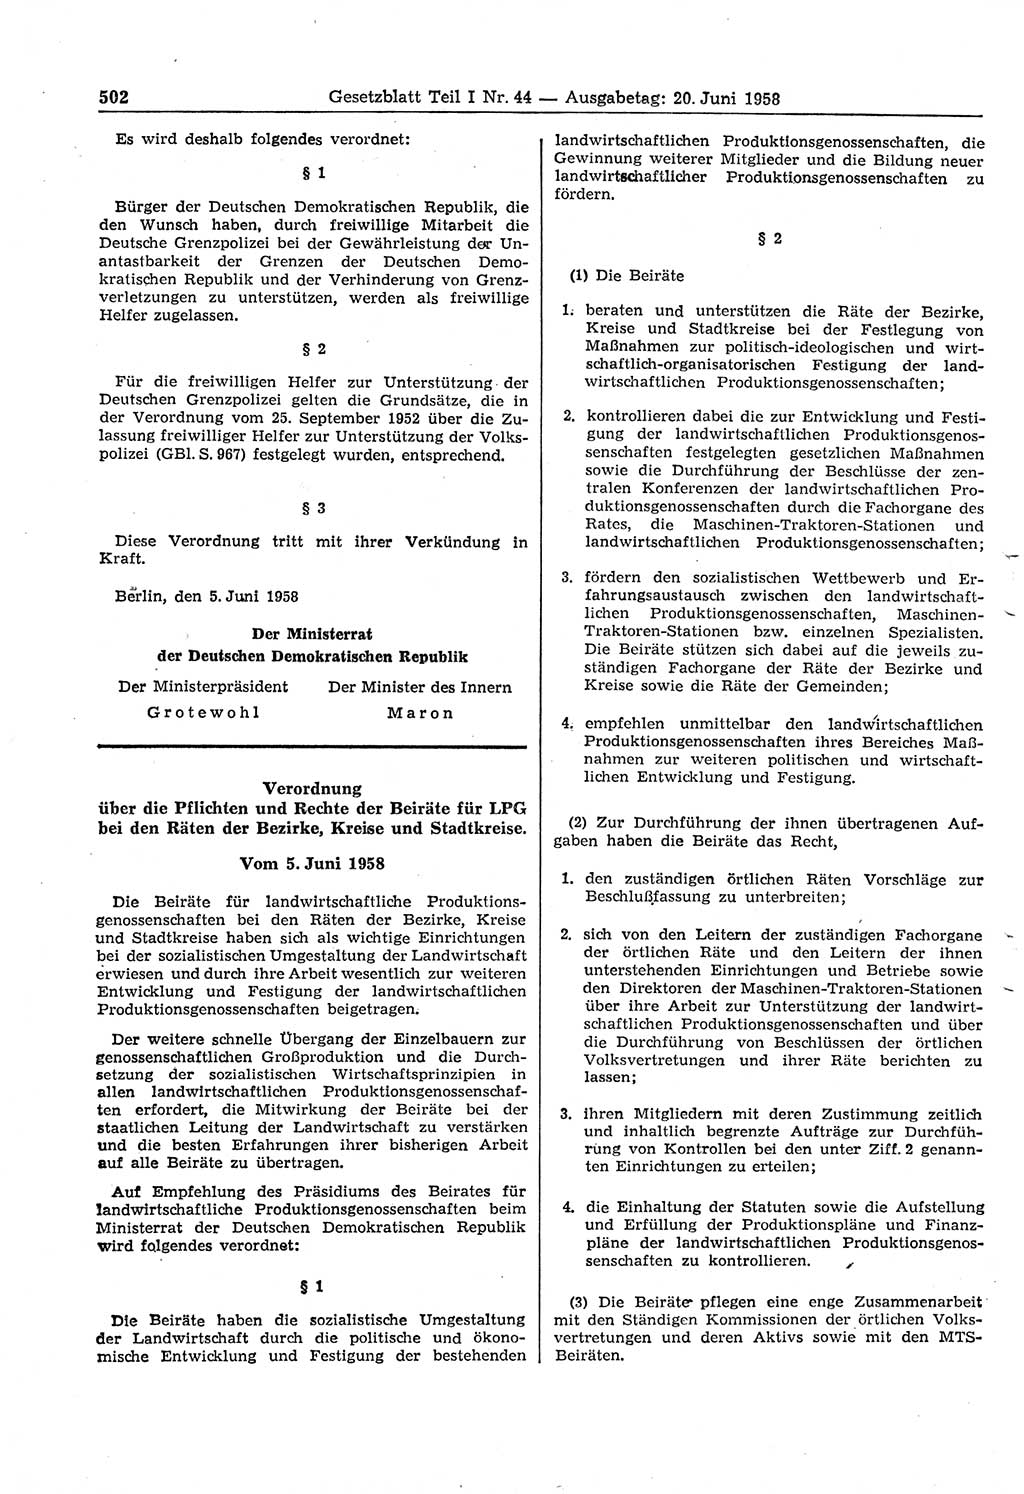 Gesetzblatt (GBl.) der Deutschen Demokratischen Republik (DDR) Teil Ⅰ 1958, Seite 502 (GBl. DDR Ⅰ 1958, S. 502)